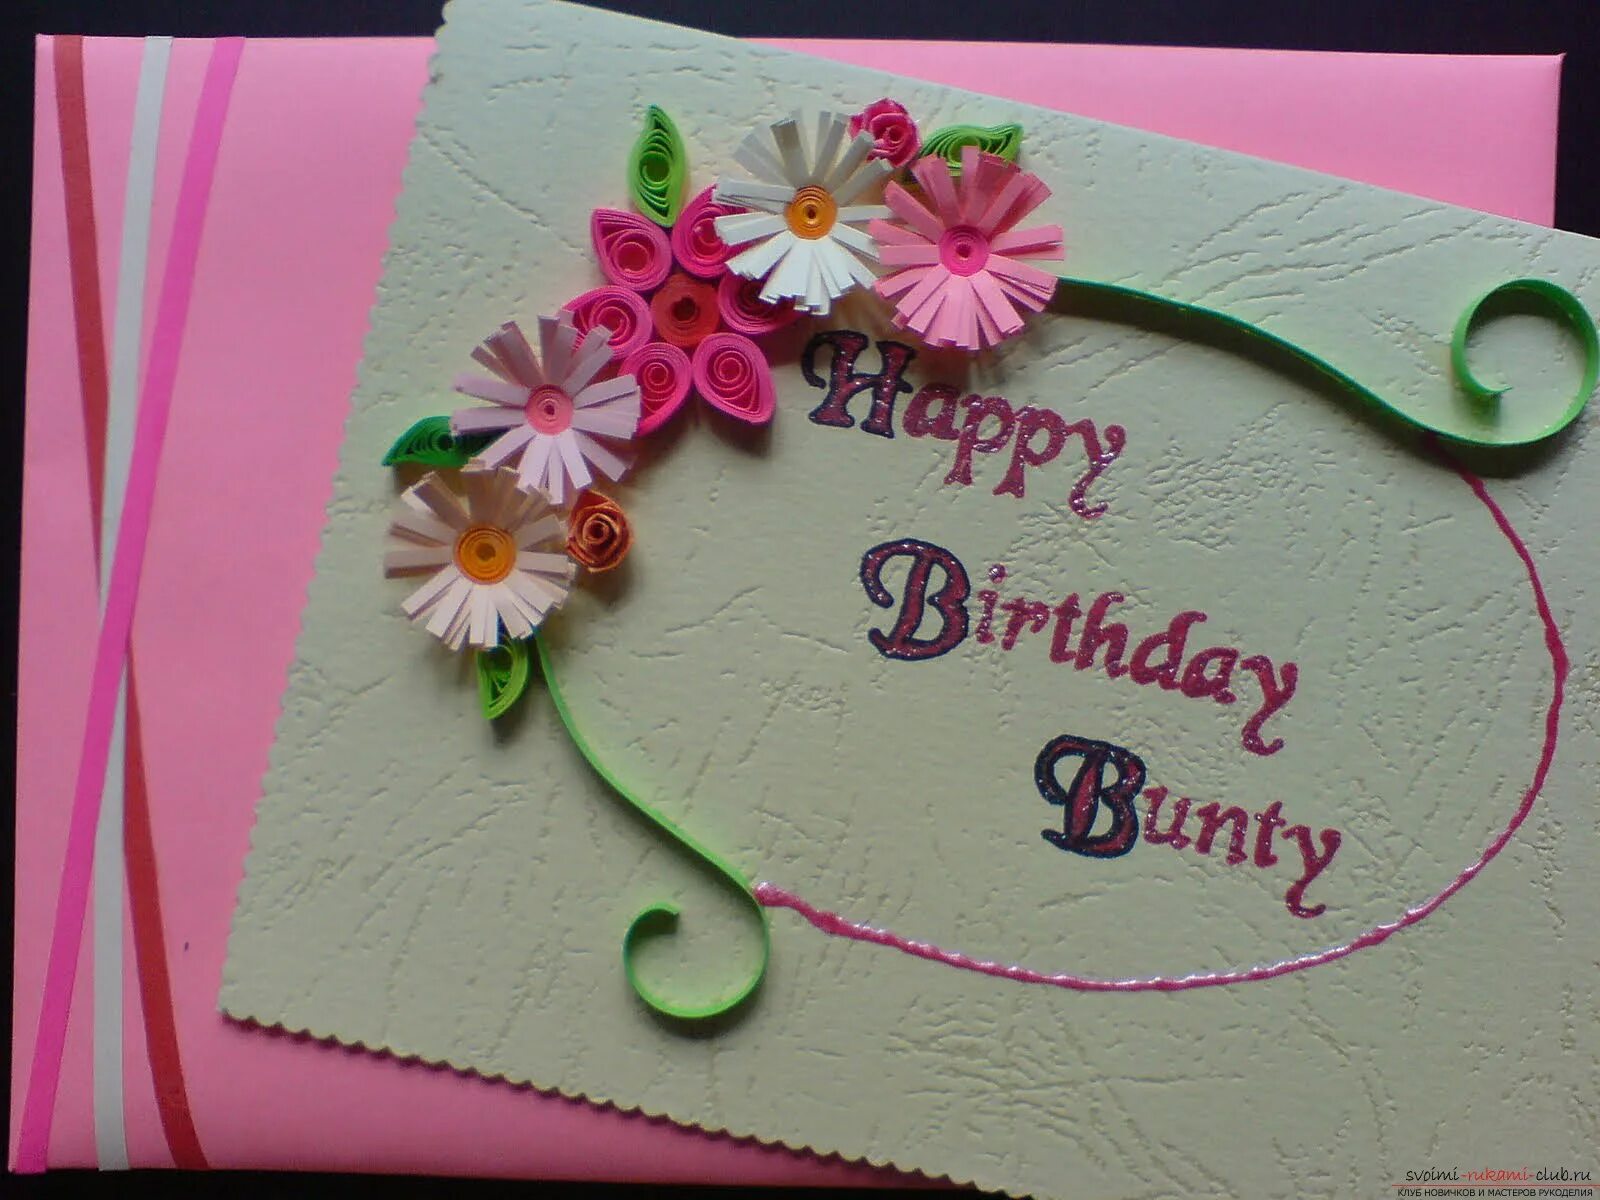 Какие открытки сделать на день рождения. Аткрытка своими руками. Идеи для открыток на день рождения. Открытка бабушке на день рожденмиясвоими руками. Открытка для мамы своими руками.